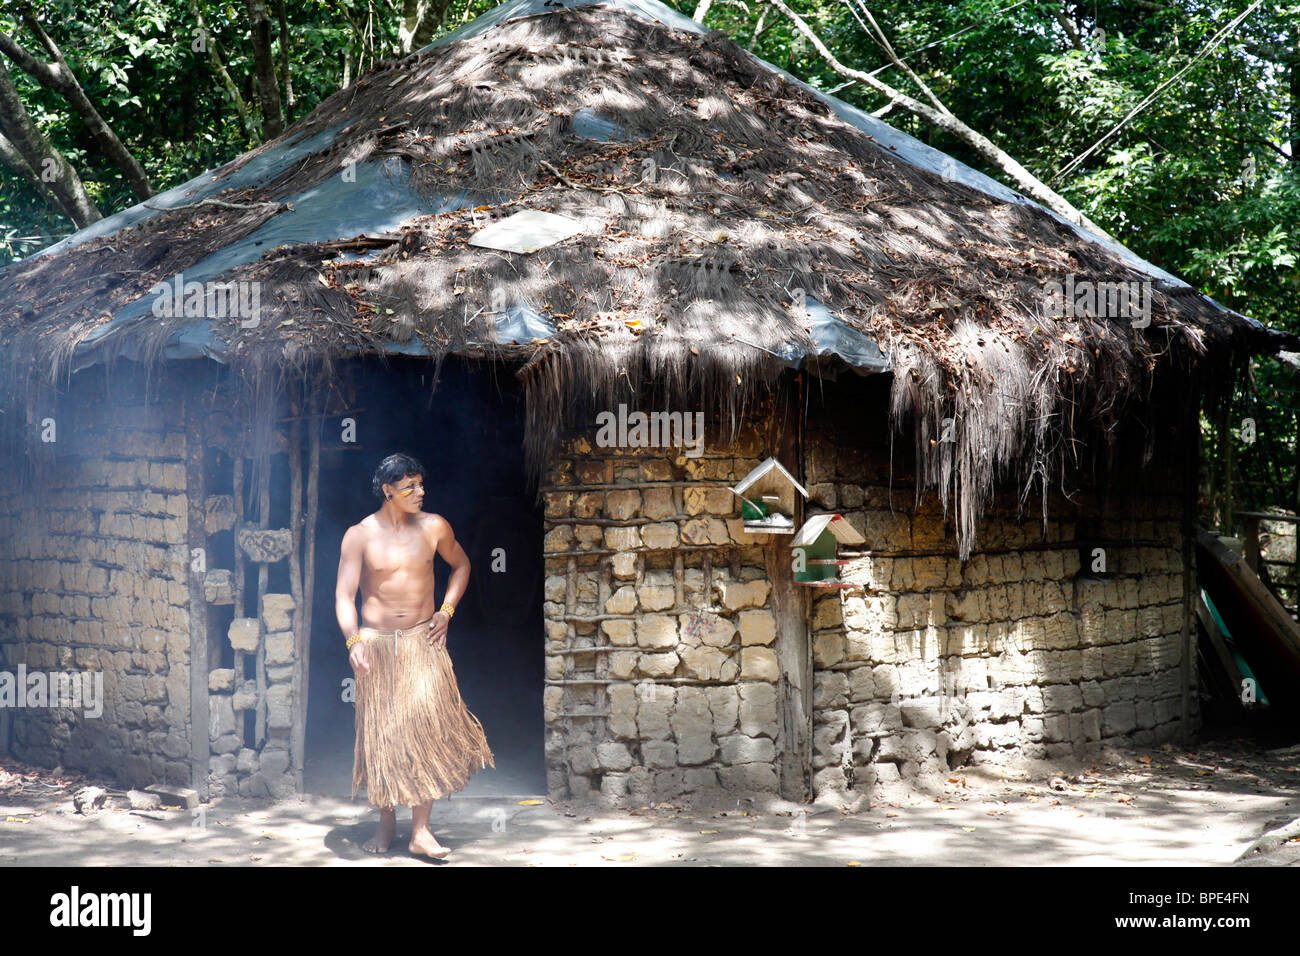 Las casas tradicionales del pueblo indio Pataxo en la Reserva Indígena da Jaqueira cerca de Porto Seguro, Bahia, Brasil. Foto de stock